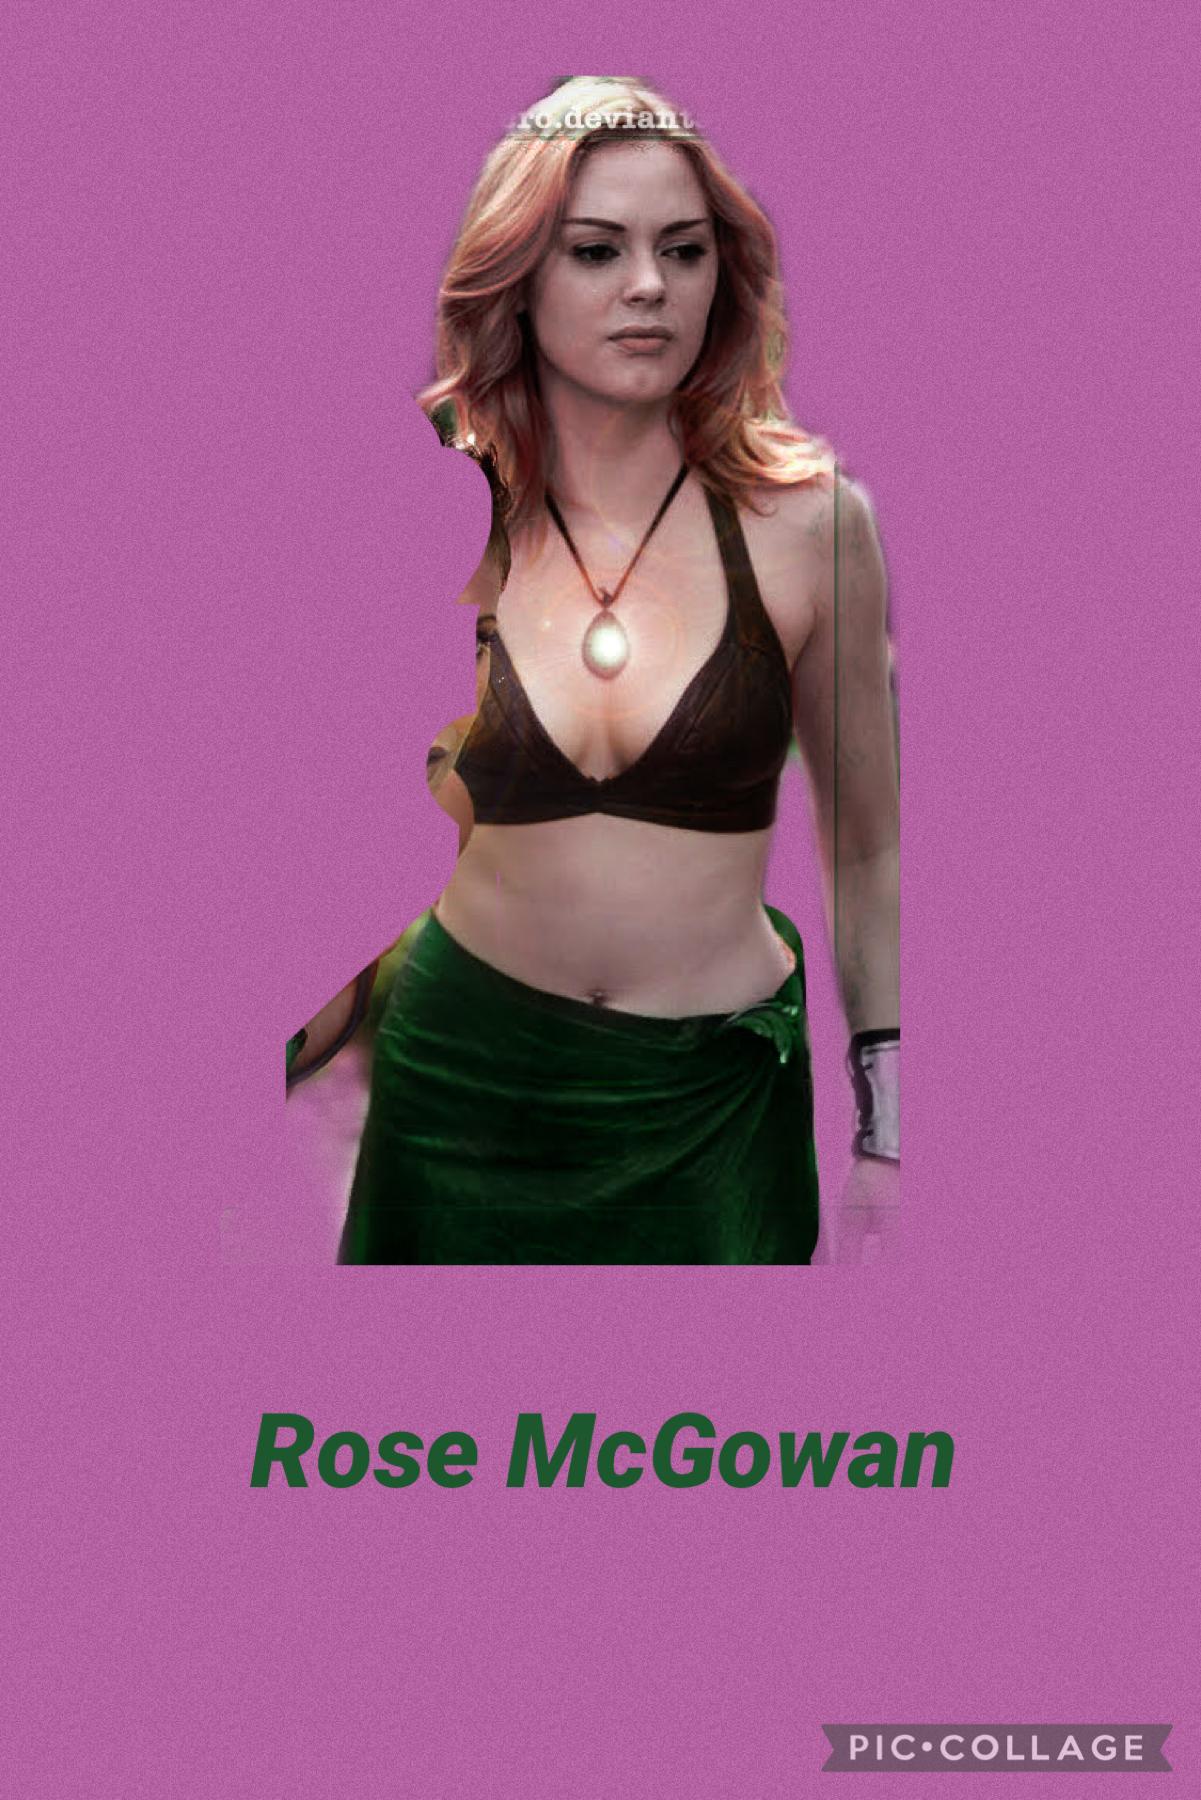 Rose mcgowan